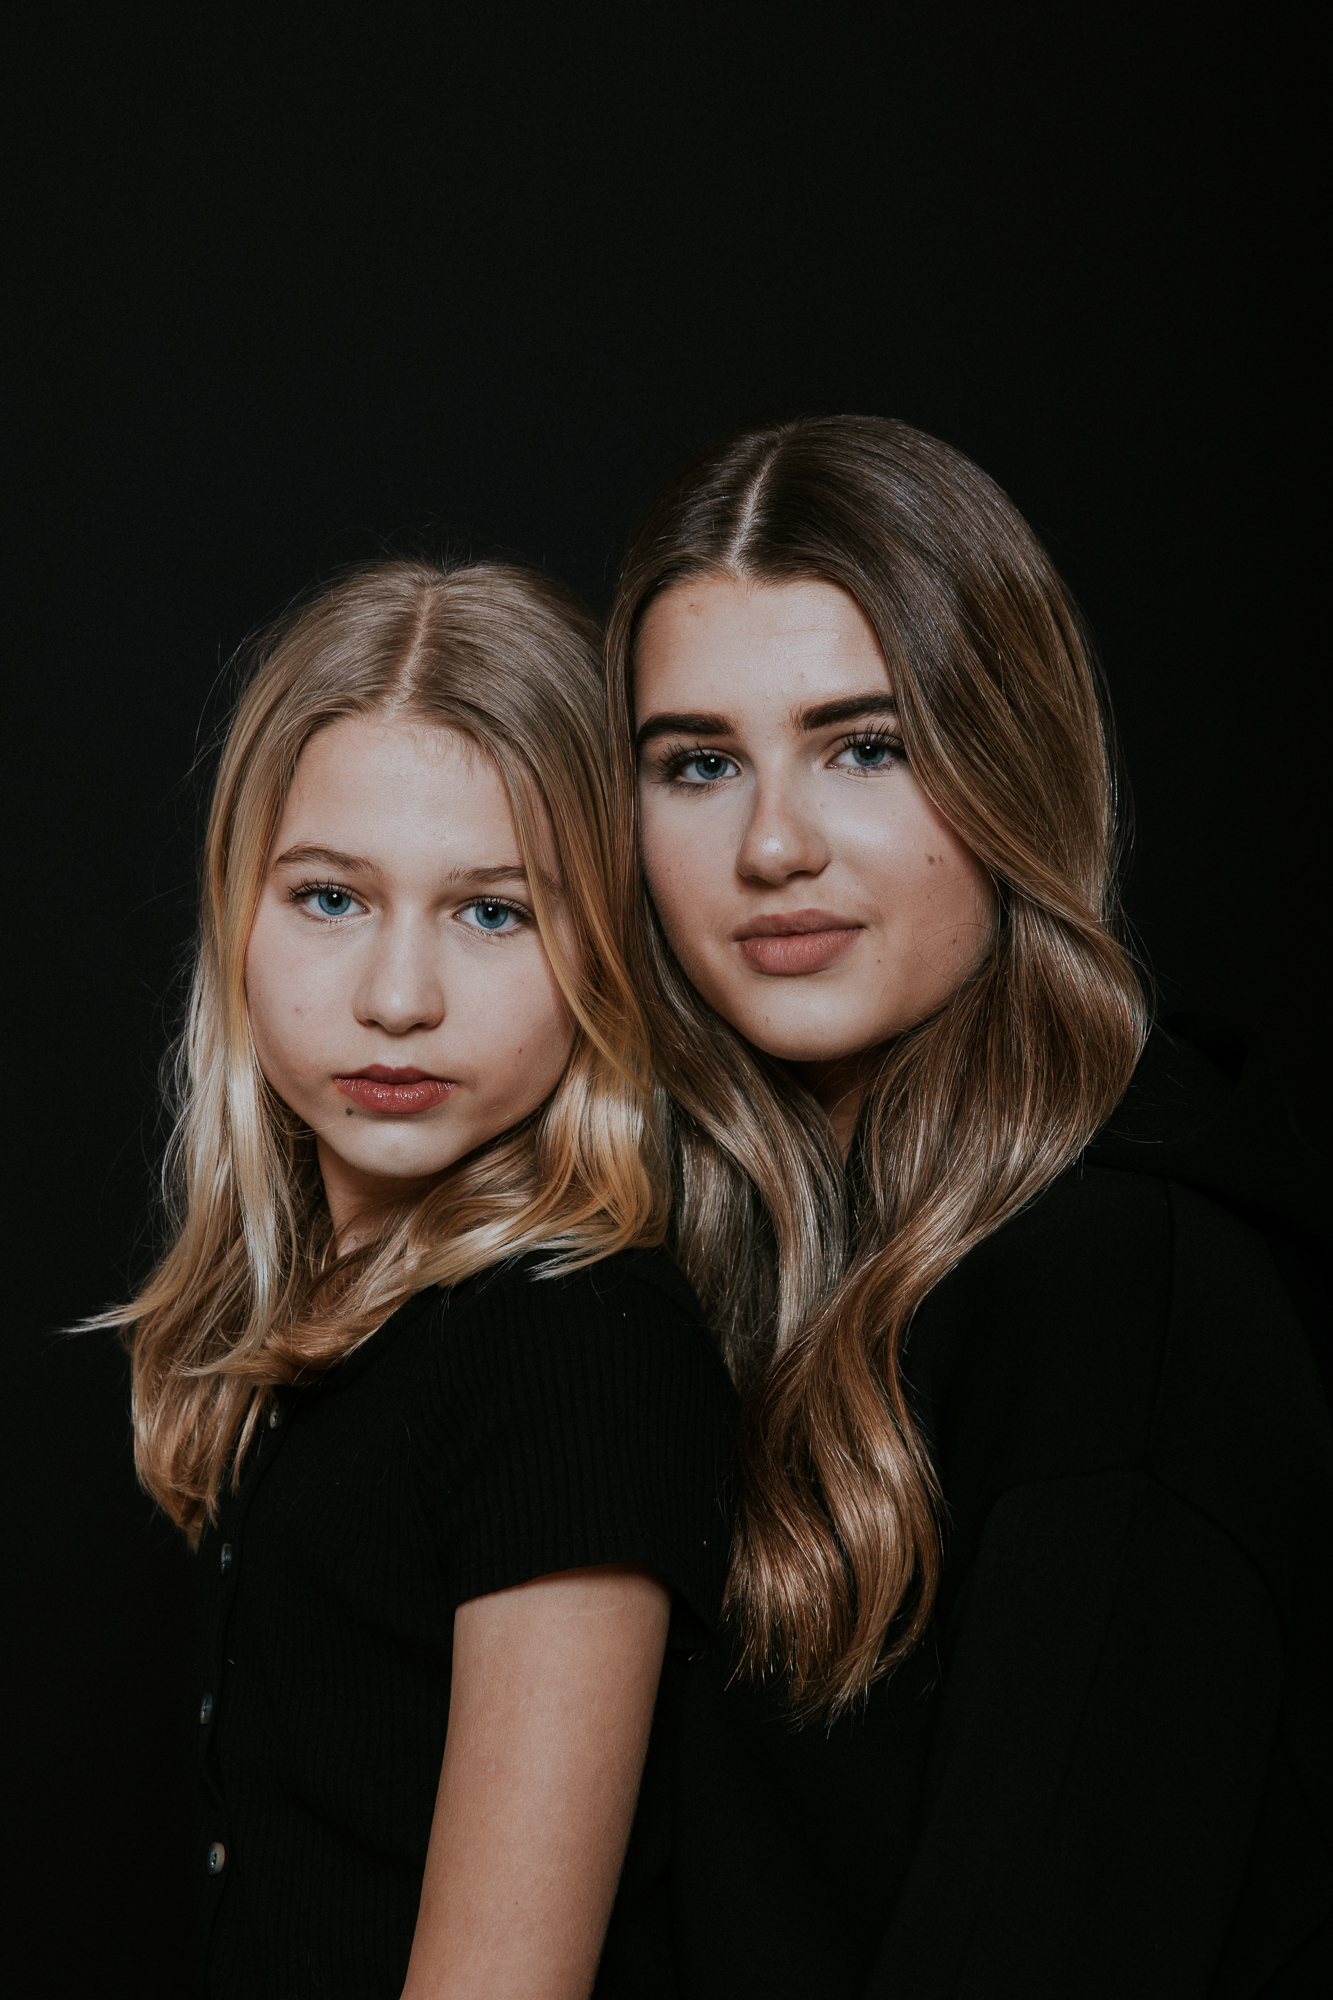 Dubbelportret van 2 zussen in het zwart gekleed door fotograaf Nickie Fotografie uit Friesland, Dokkum.